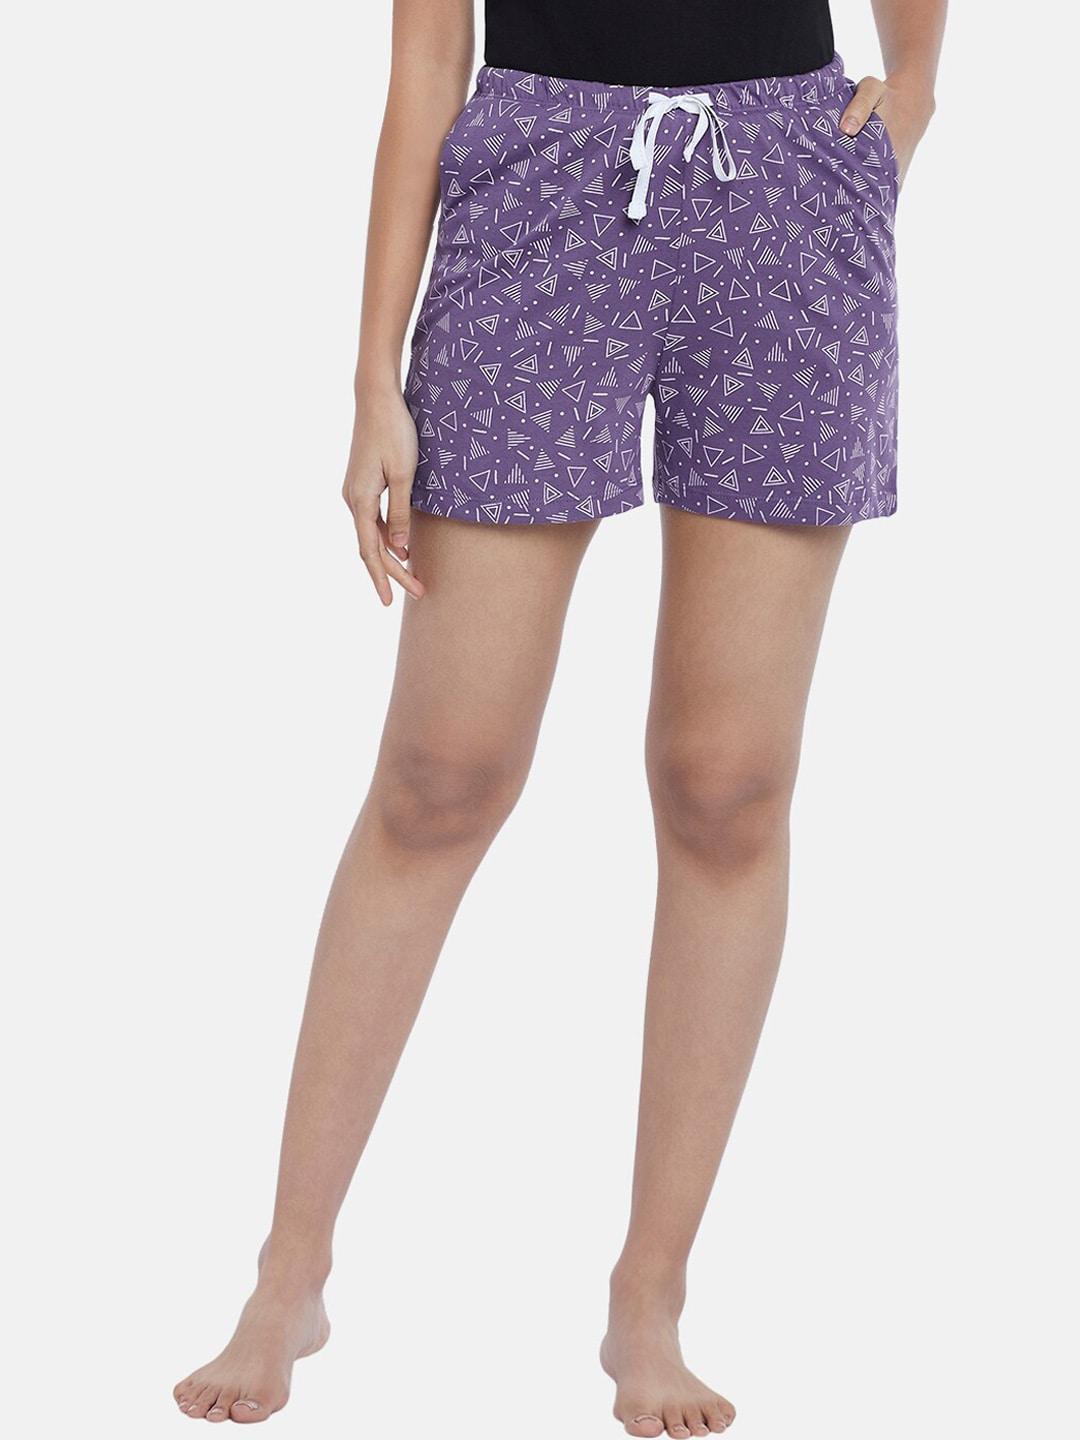 dreamz-by-pantaloons-women-purple-&-white-printed-lounge-shorts